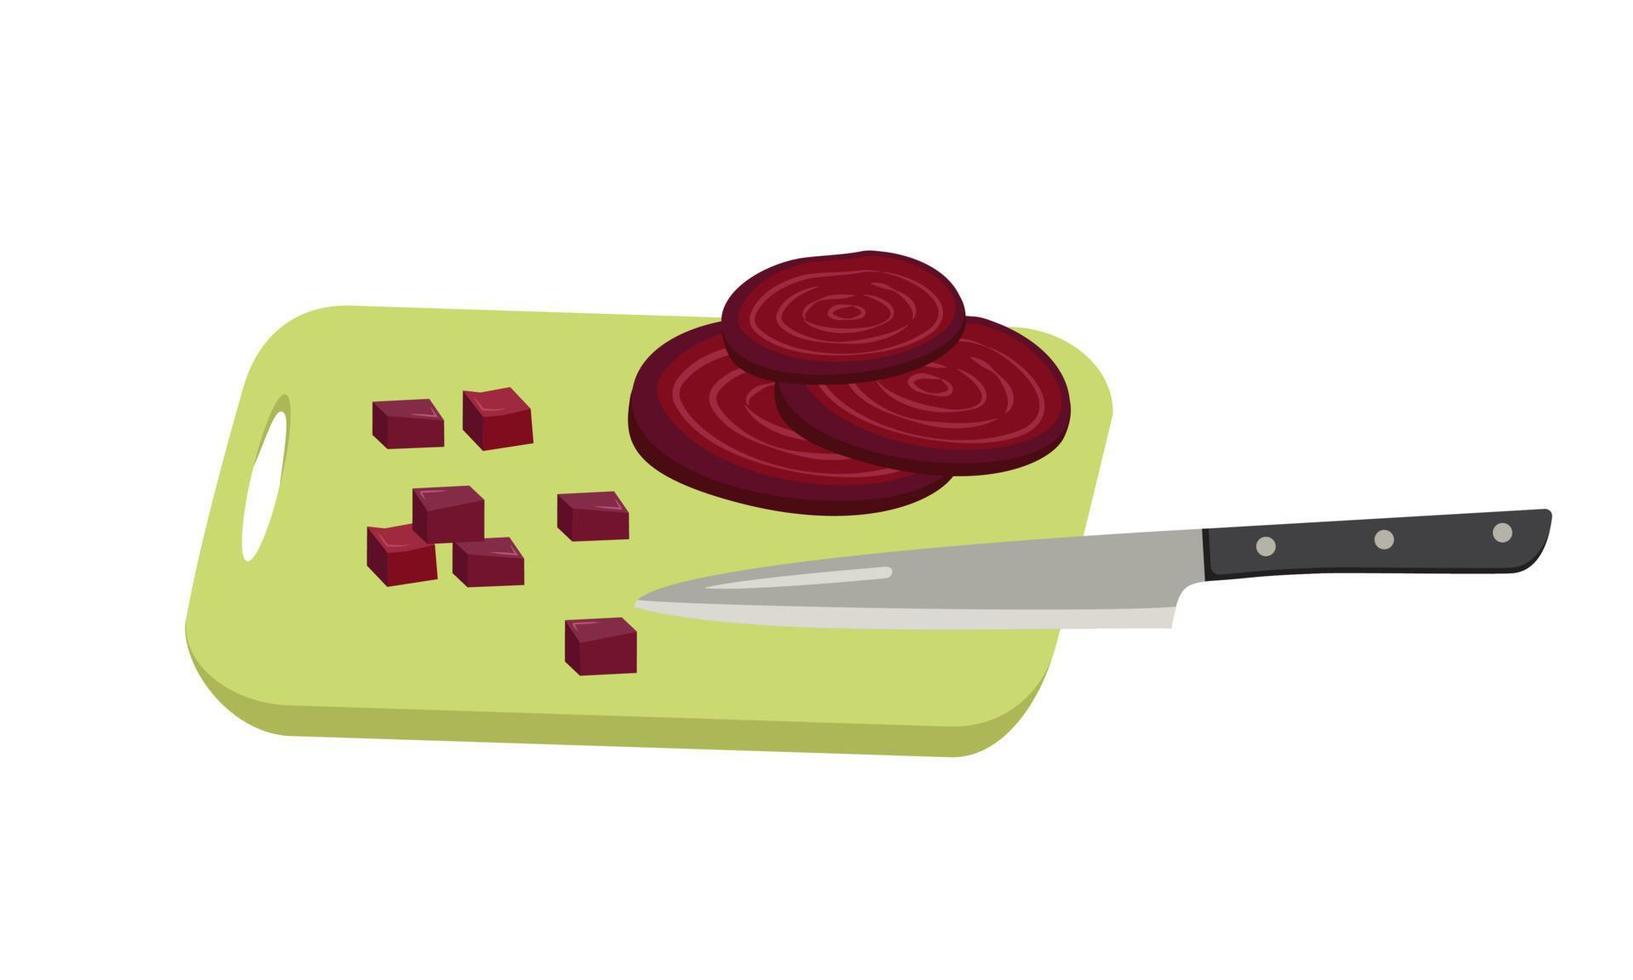 rode biet plakjes en blokjes gesneden met mes aan boord. gezonde groenten en heerlijk eten voor salade, koken. platte vectorillustratie vector